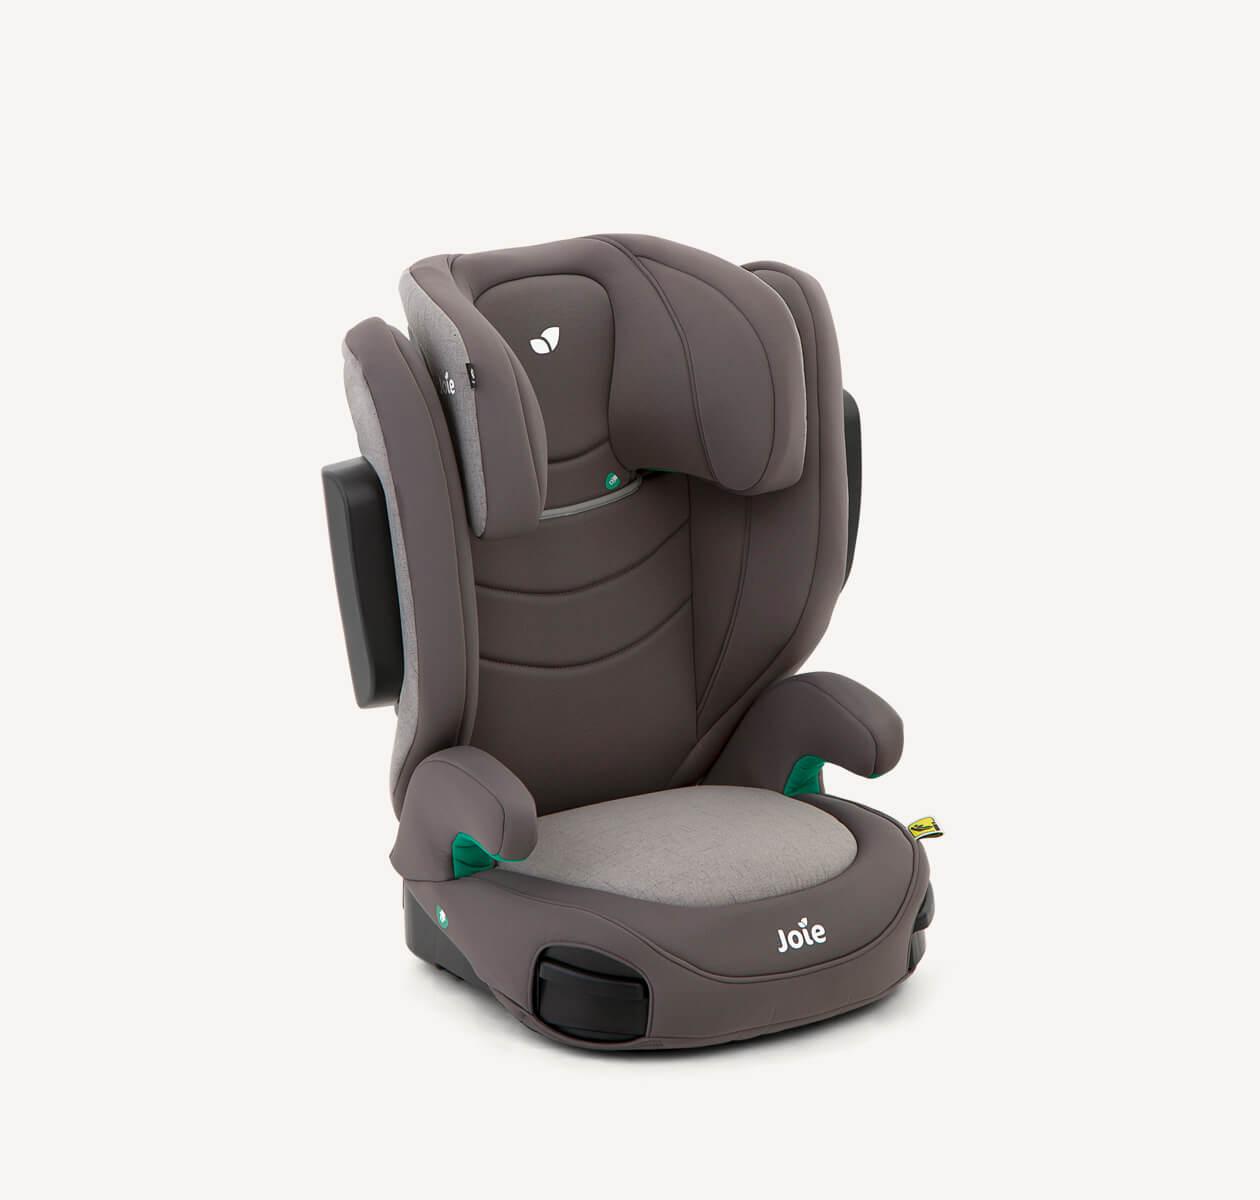 Graue i-Trillo LX Sitzerhöhung mit hoher Rückenlehne, im 45-Grad-Winkel nach rechts zeigend, Kopfstütze in niedrigster Position